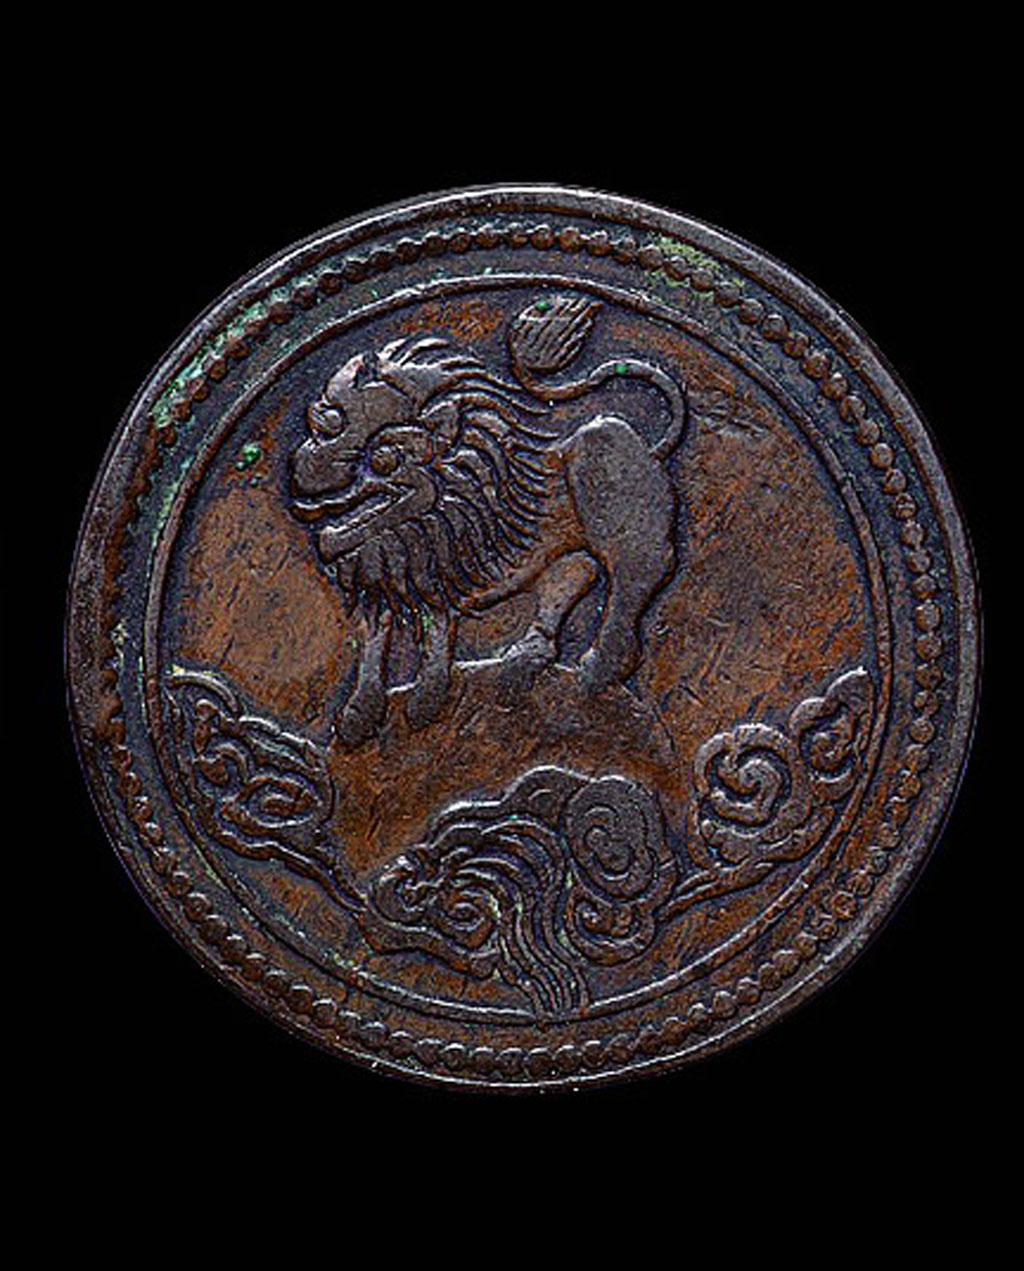 民国元年四川省造狮子图五文铜币一枚